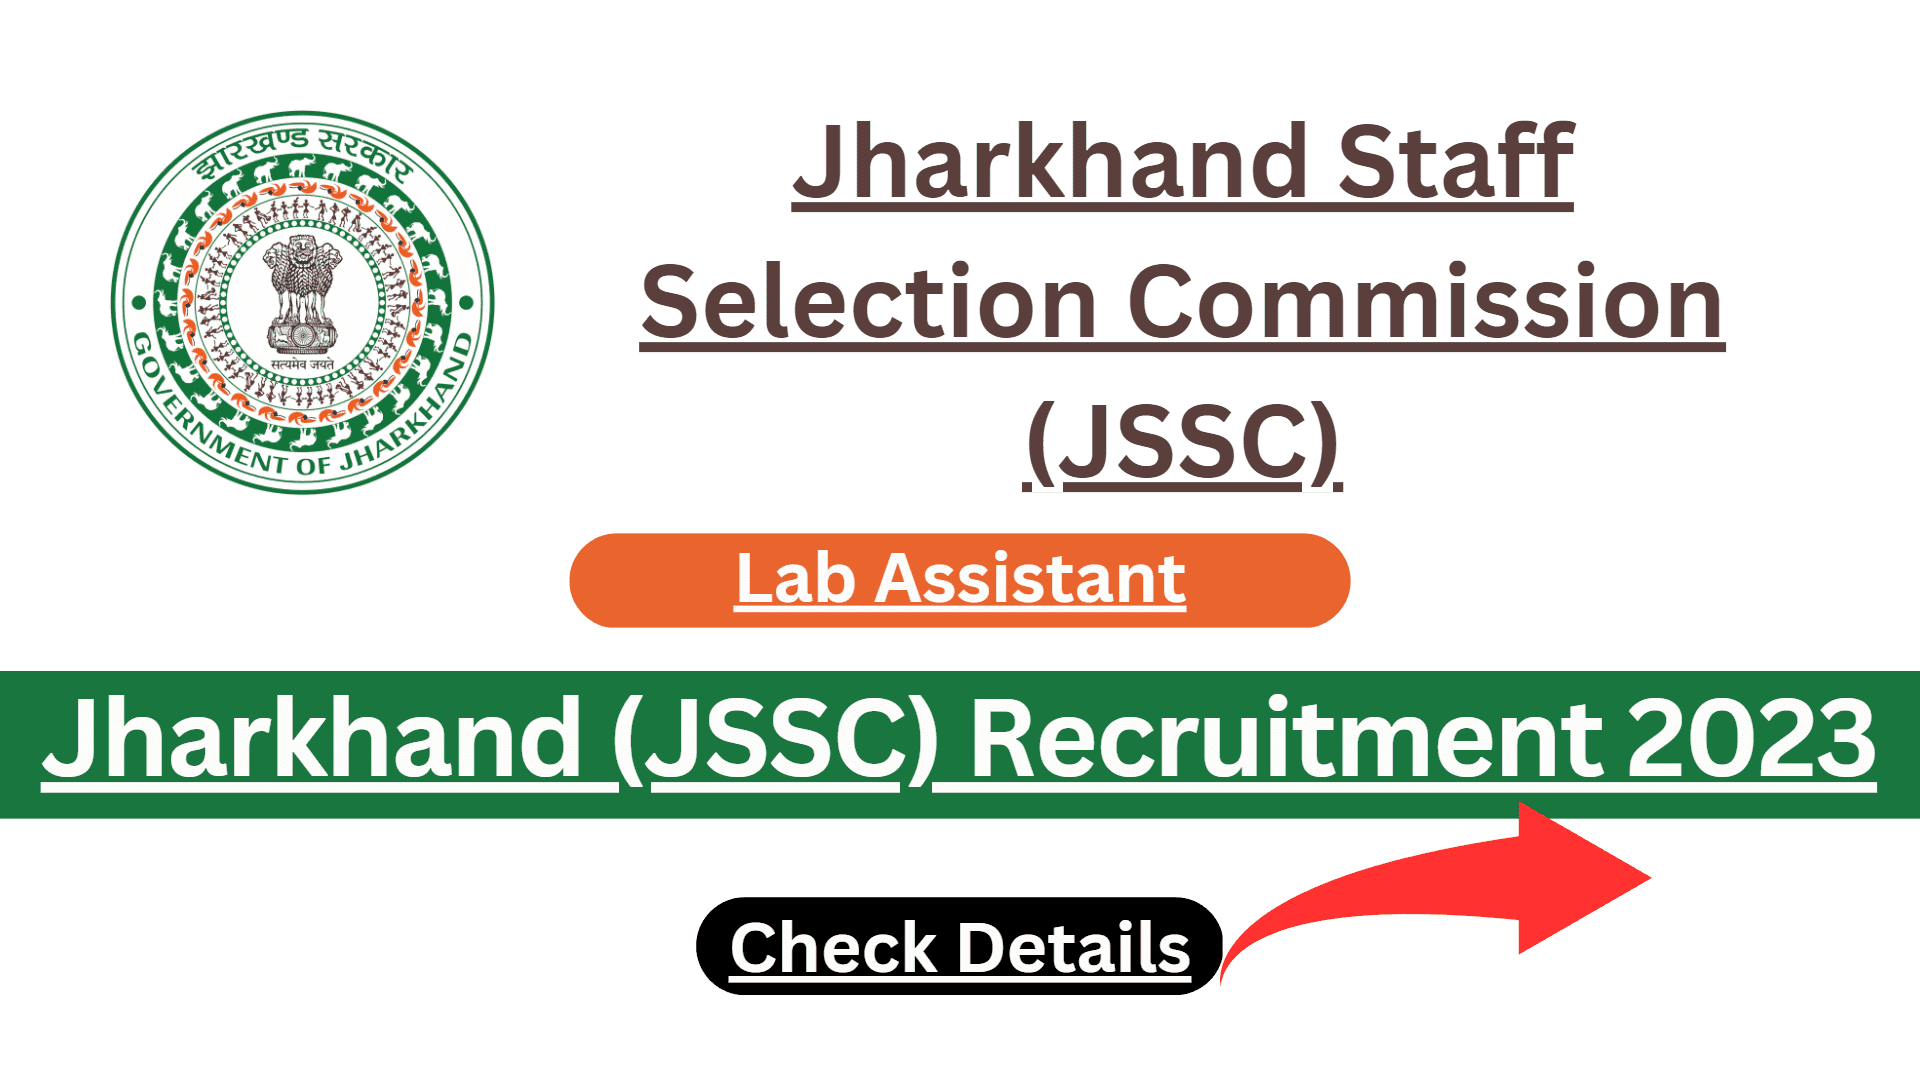 JSSC Recruitment 2023